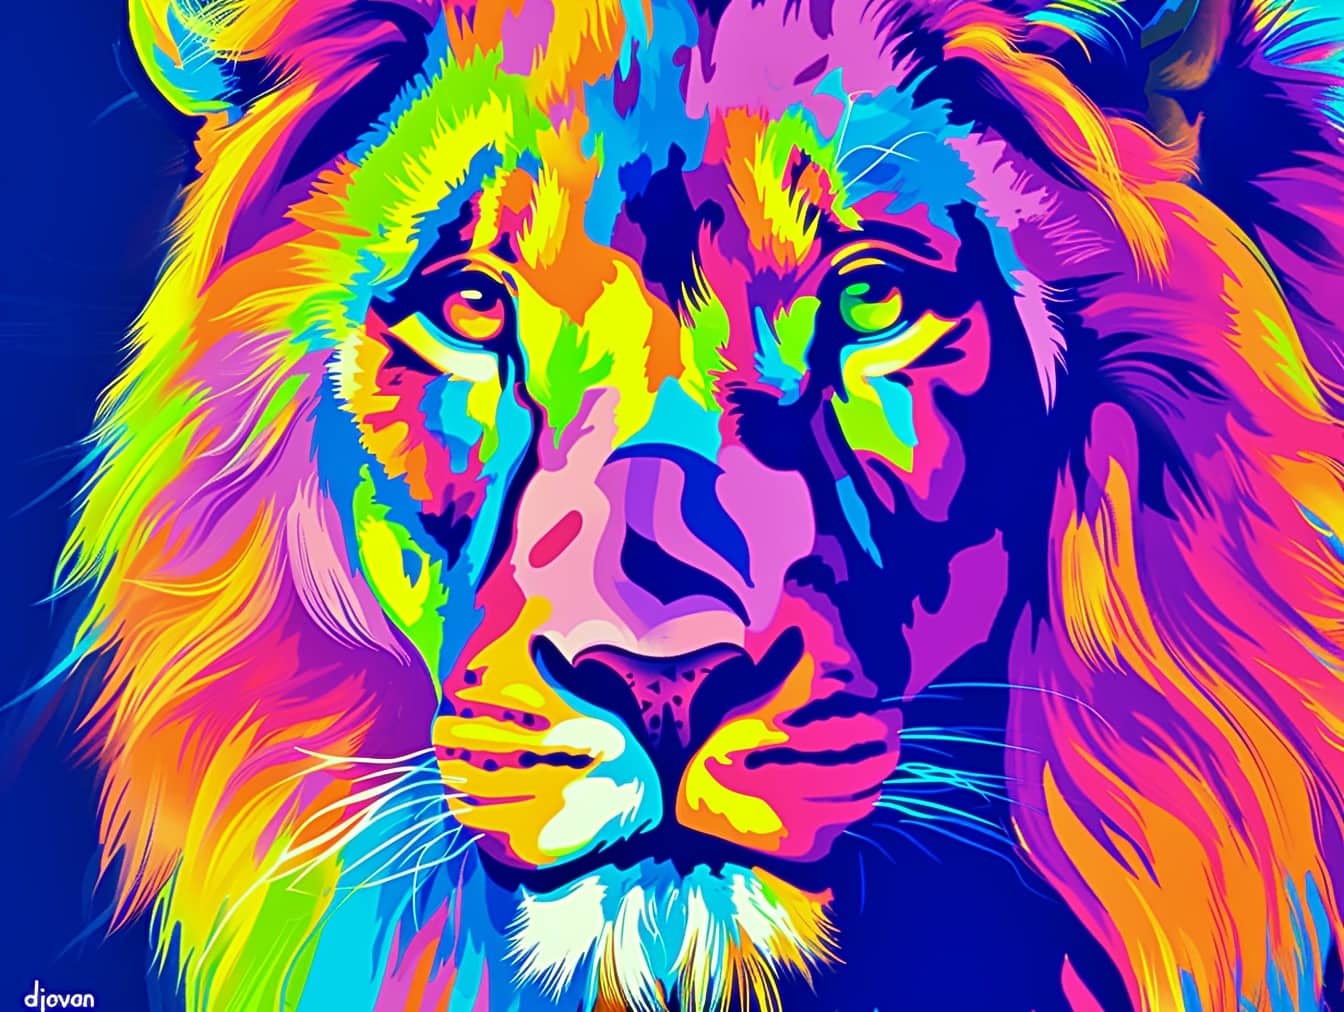 Графика головы льва в стиле поп-арт с длинной разноцветной гривой